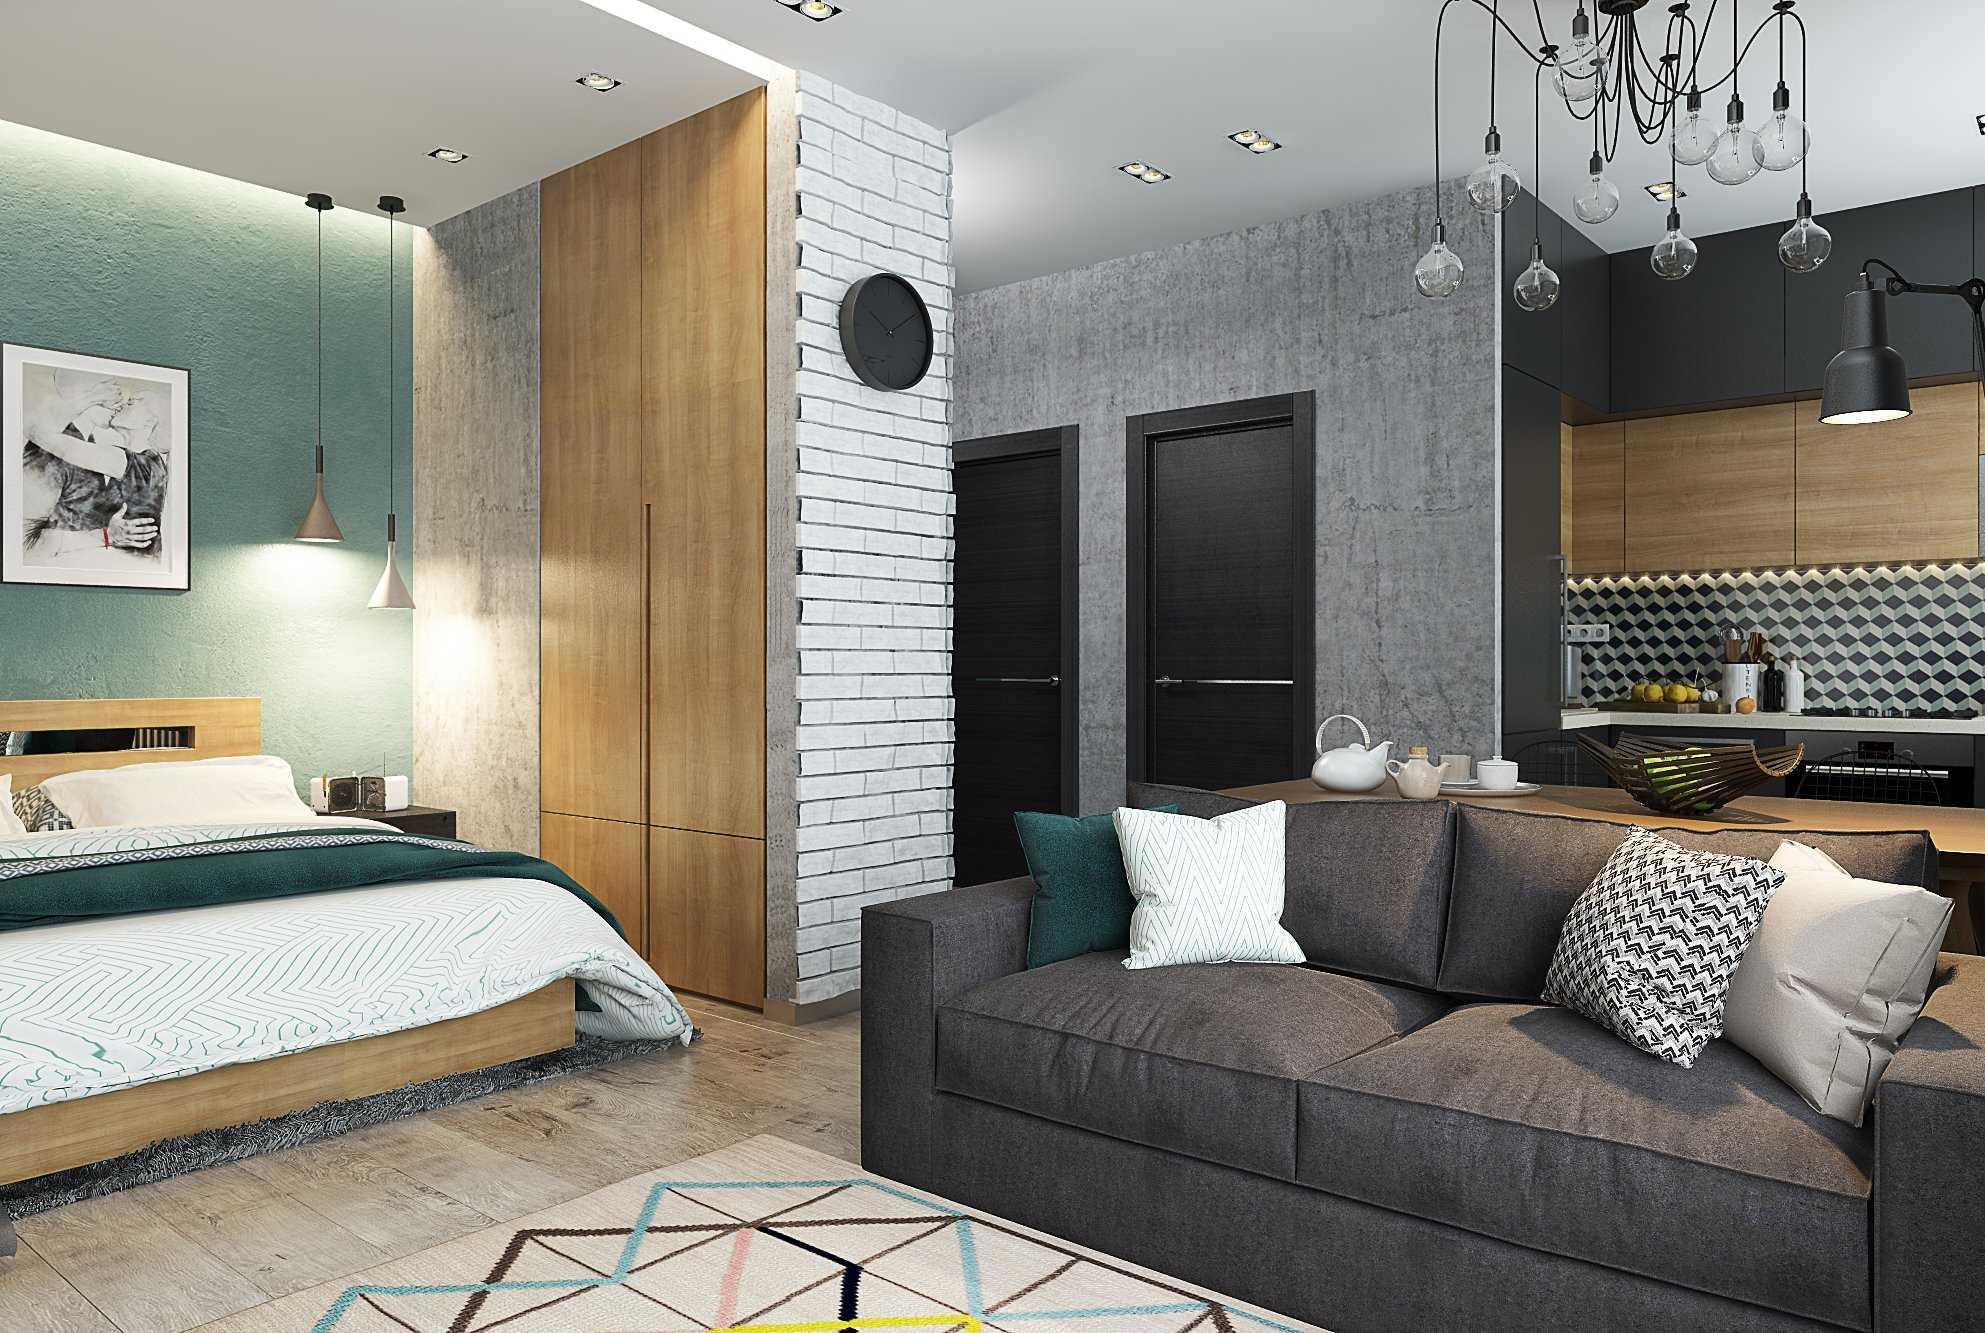 Квартира 40 кв. м.: варианты планировки и зонирования небольшой квартиры. выбор стилистики интерьера, растановка мебели, настройка освещения (фото + видео)